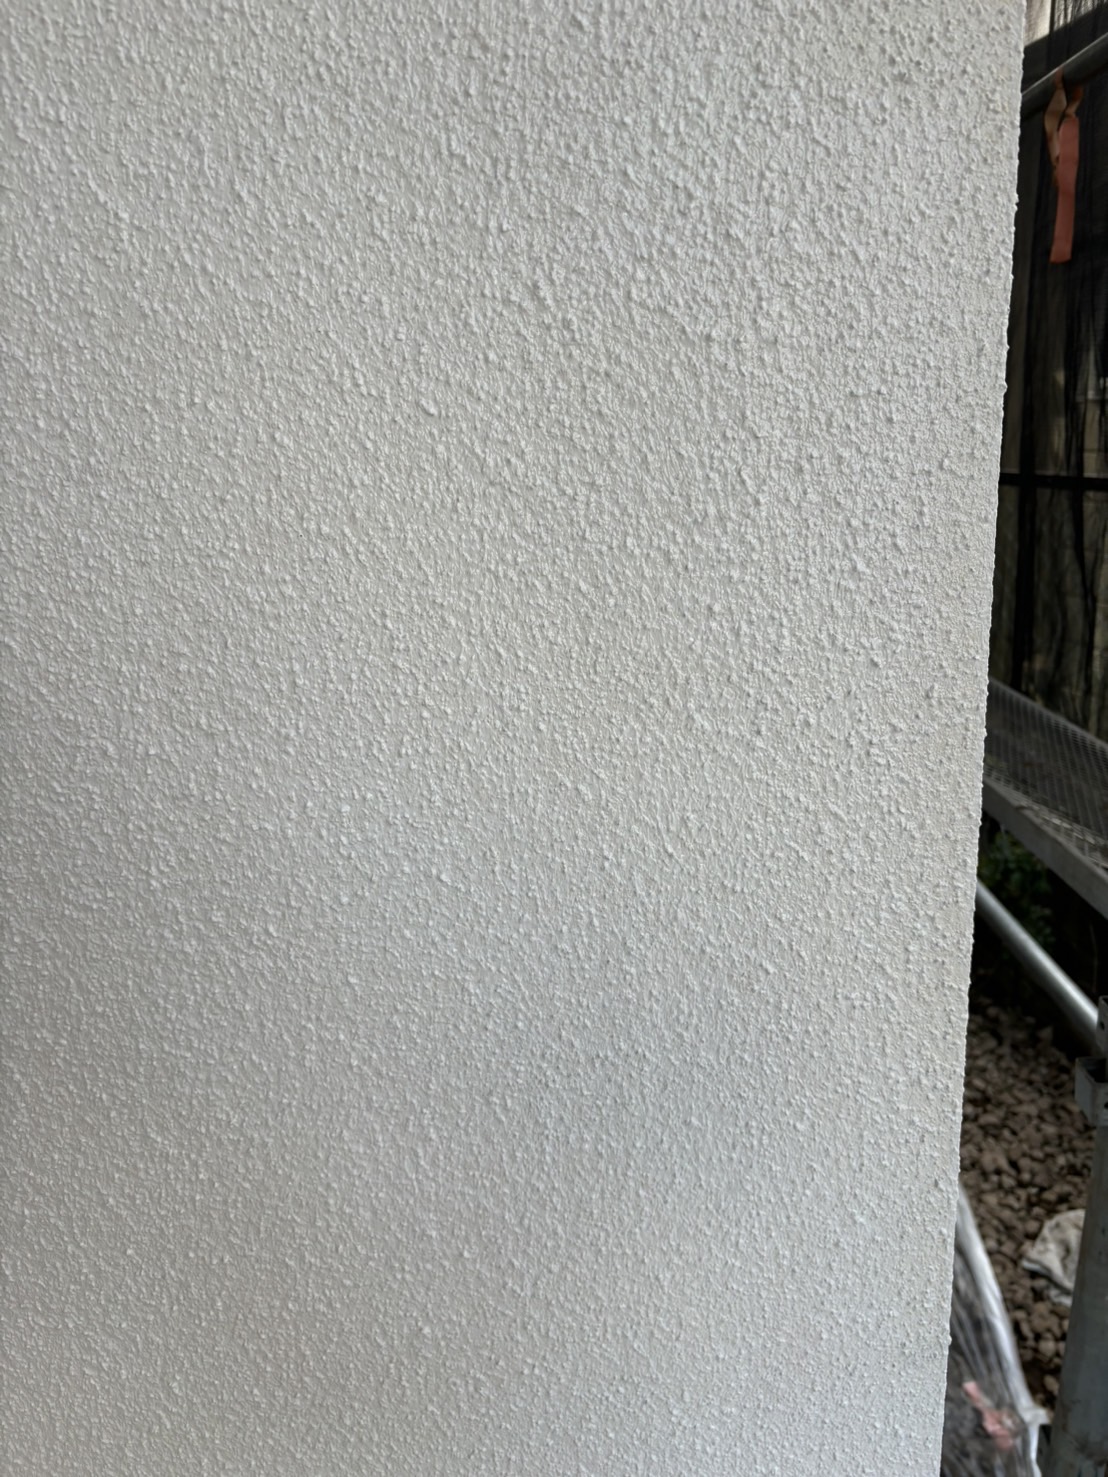 ［東京都清瀬市元町］外壁の下塗りを行いました【施工中の様子60】